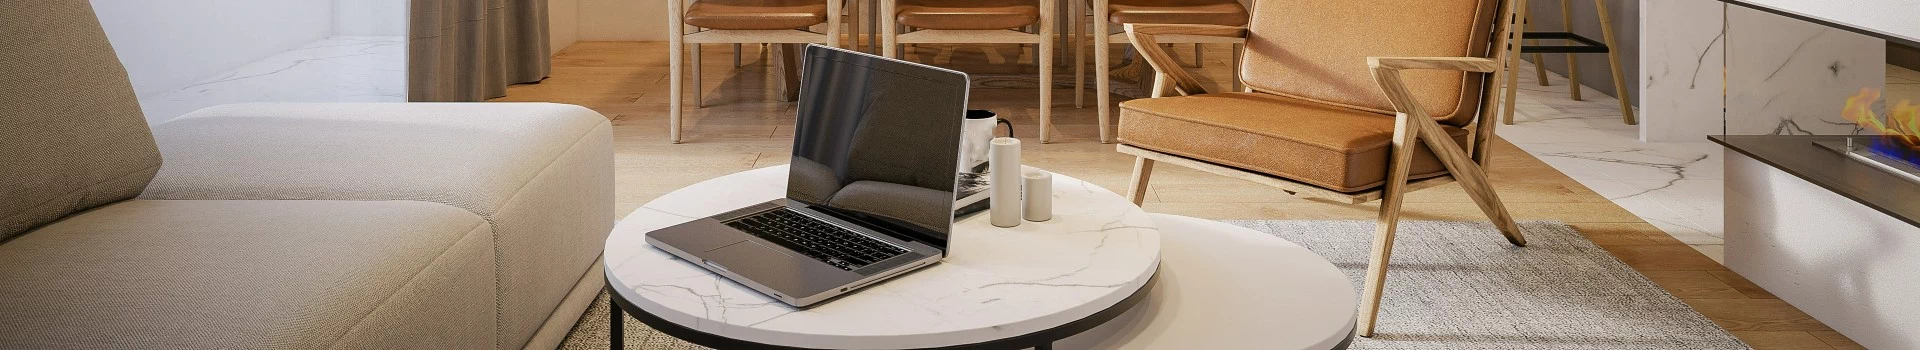 banner - laptop na stoliku do kawy w salonie